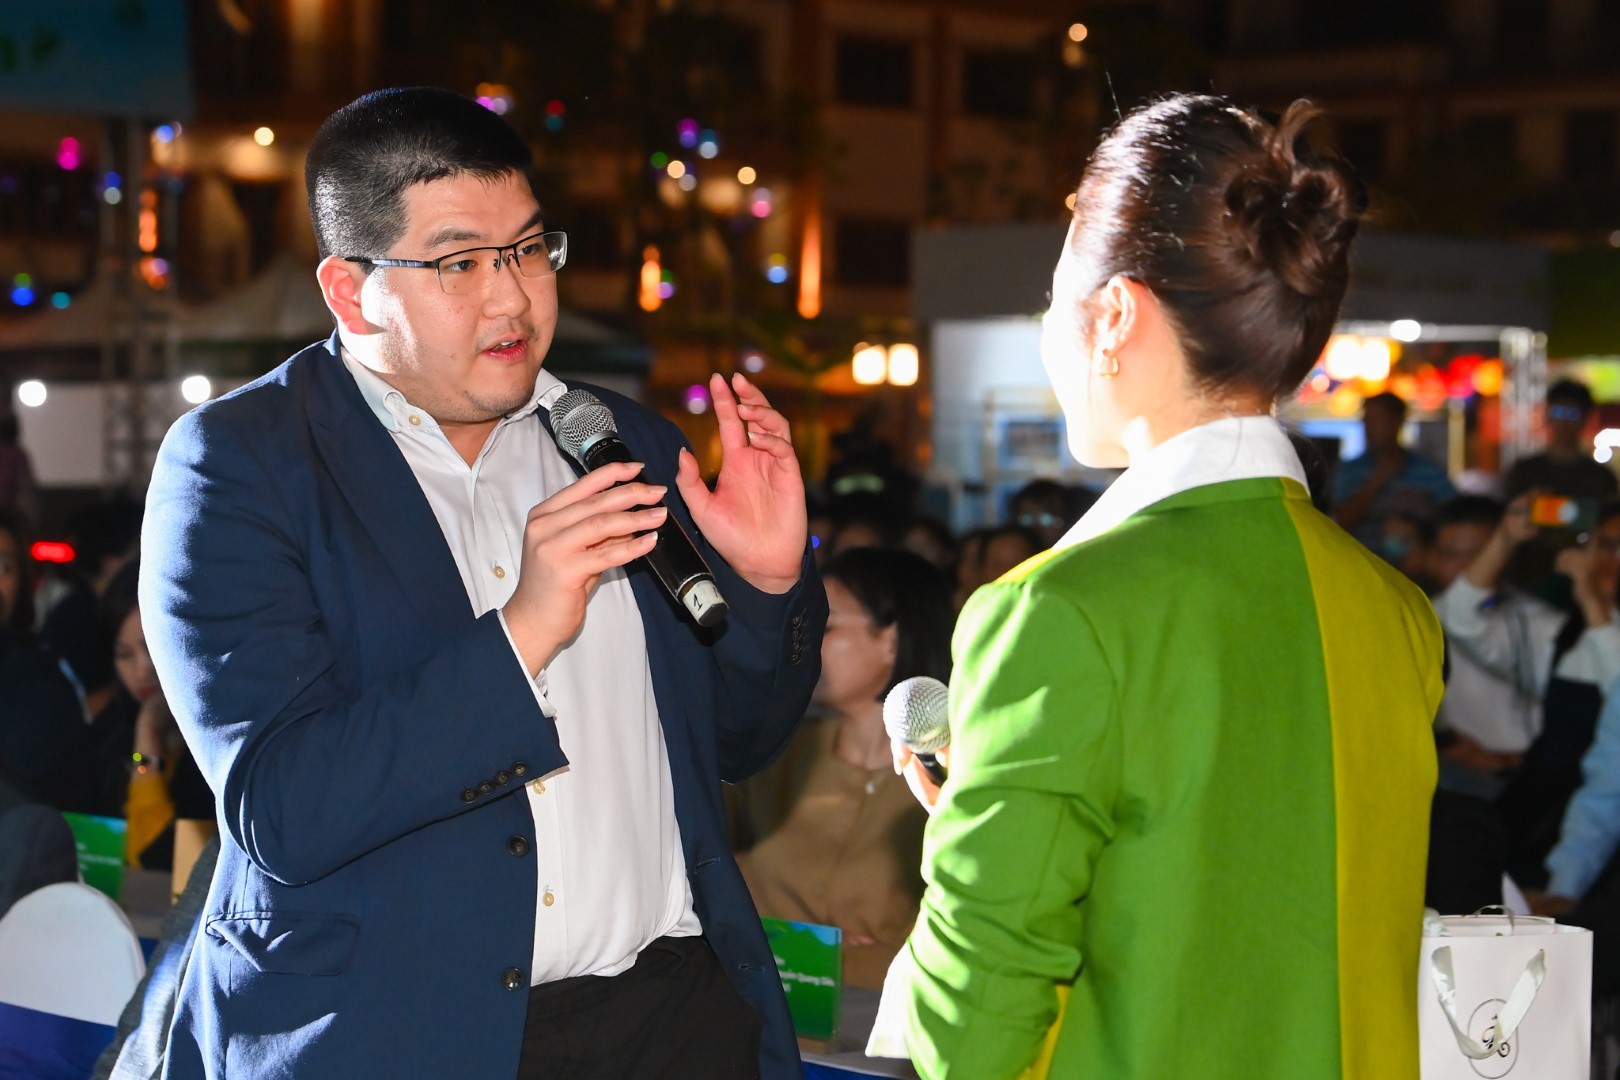 TS. Brian Wong chia sẻ về cuộc thi Tiếng nói Xanh trong đêm chung kết.